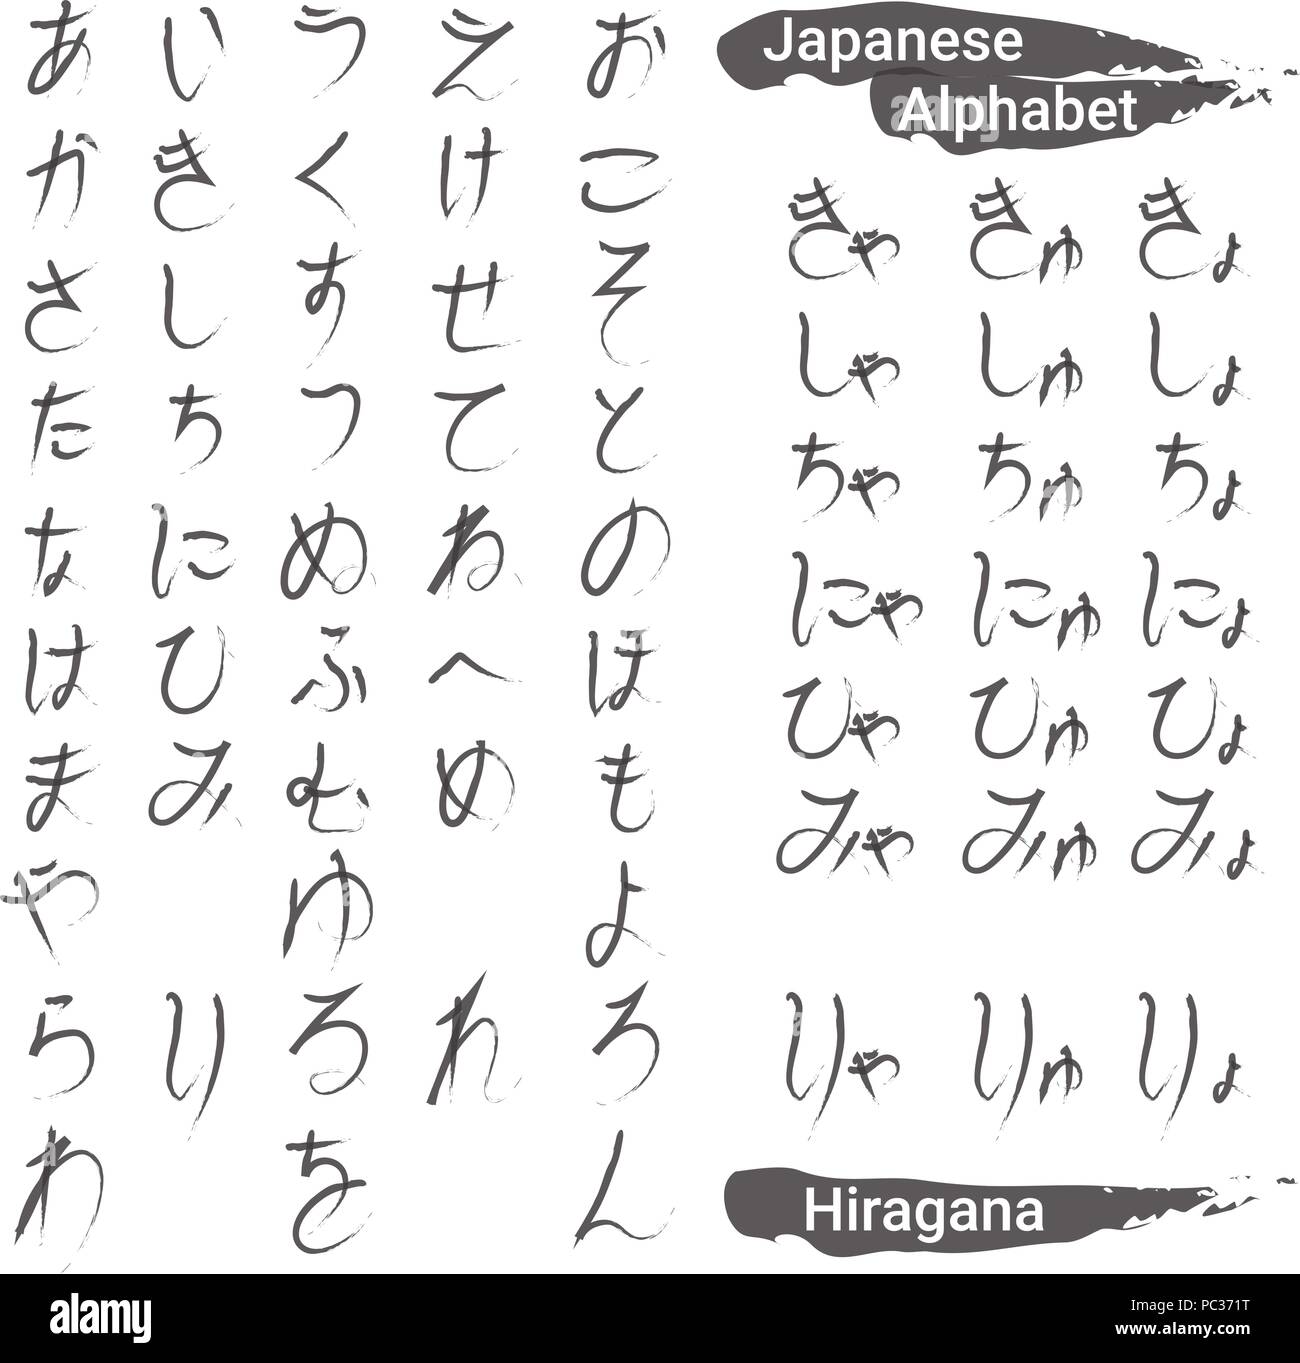 Hiragana alfabeto japonés escritos a mano Ilustración del Vector